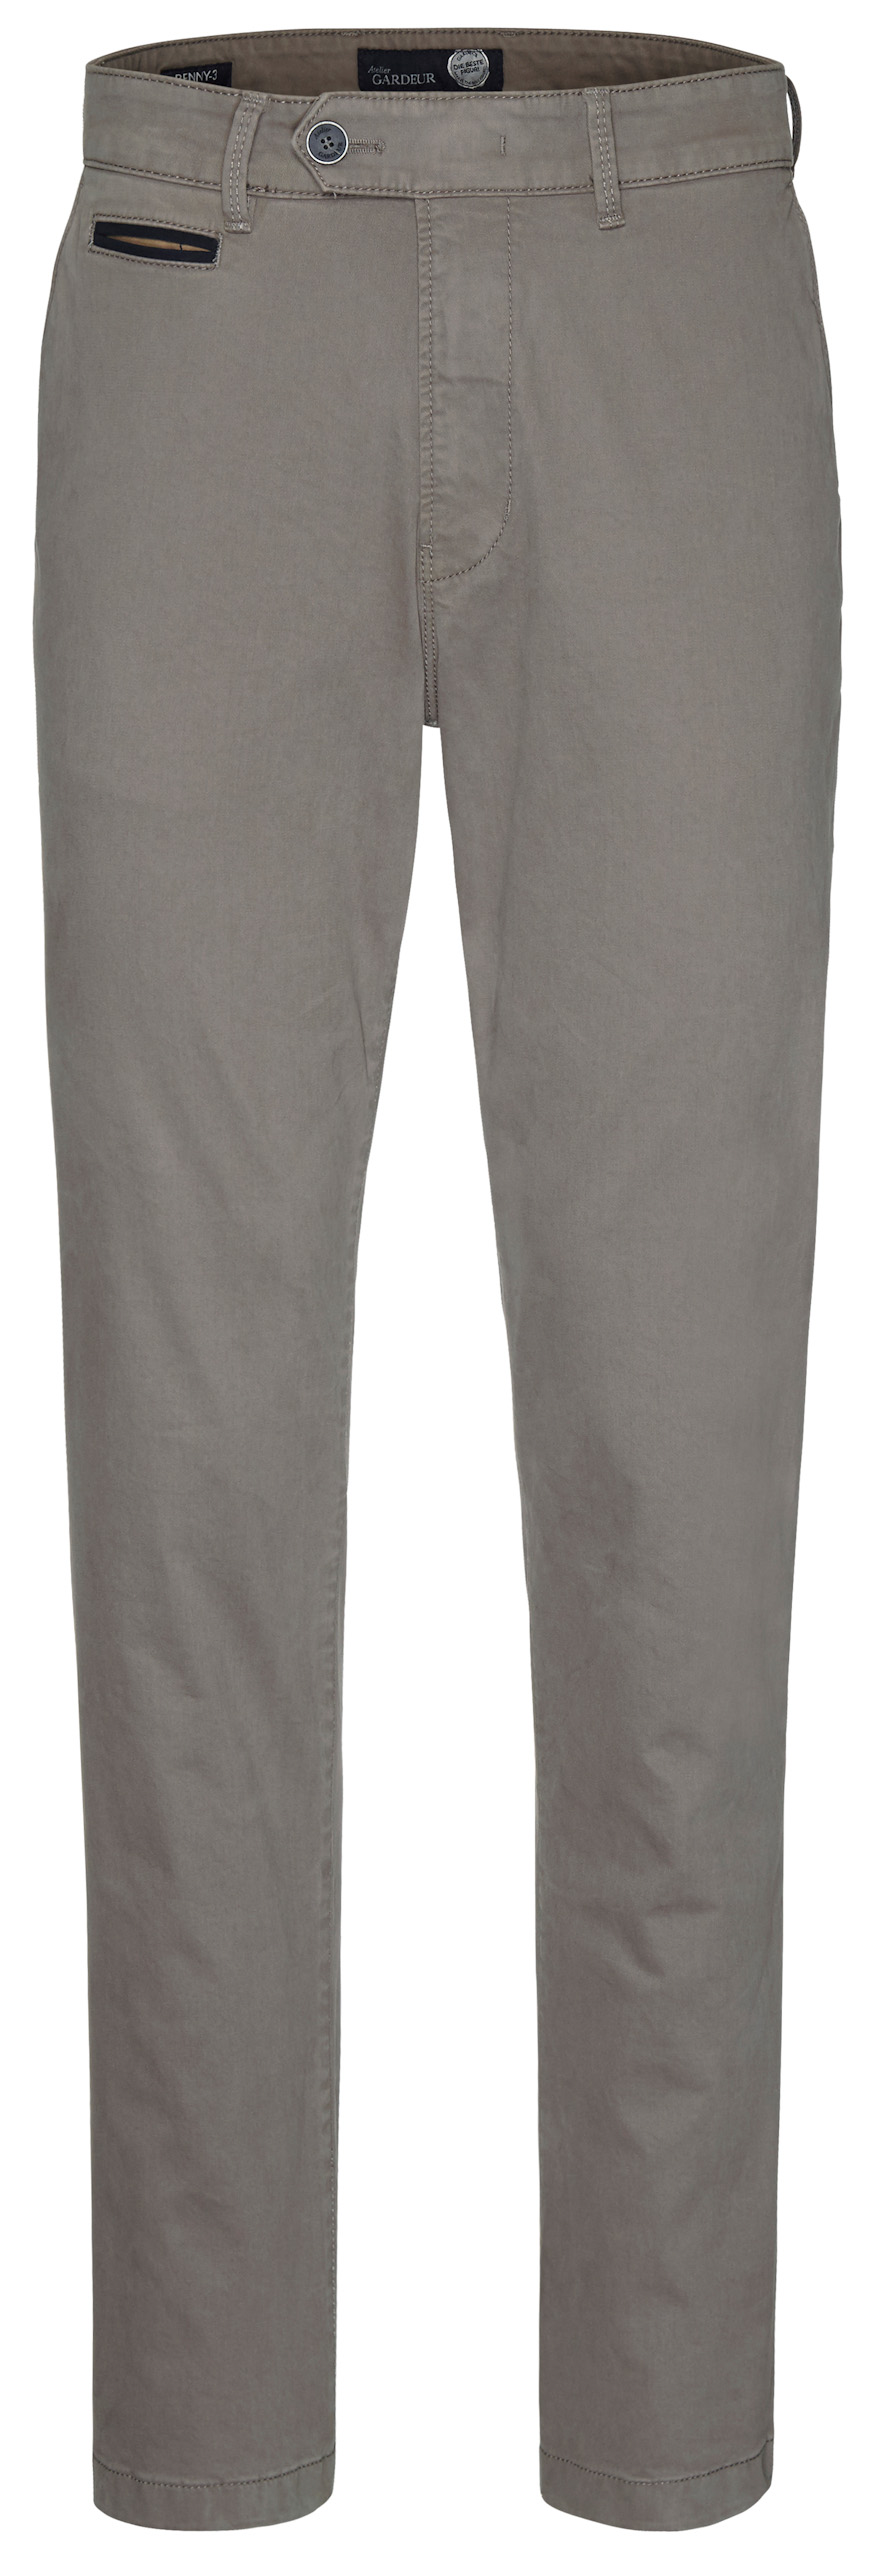 Gardeur BENNY-3 Pants Stone | Jan Rozing Men's Fashion